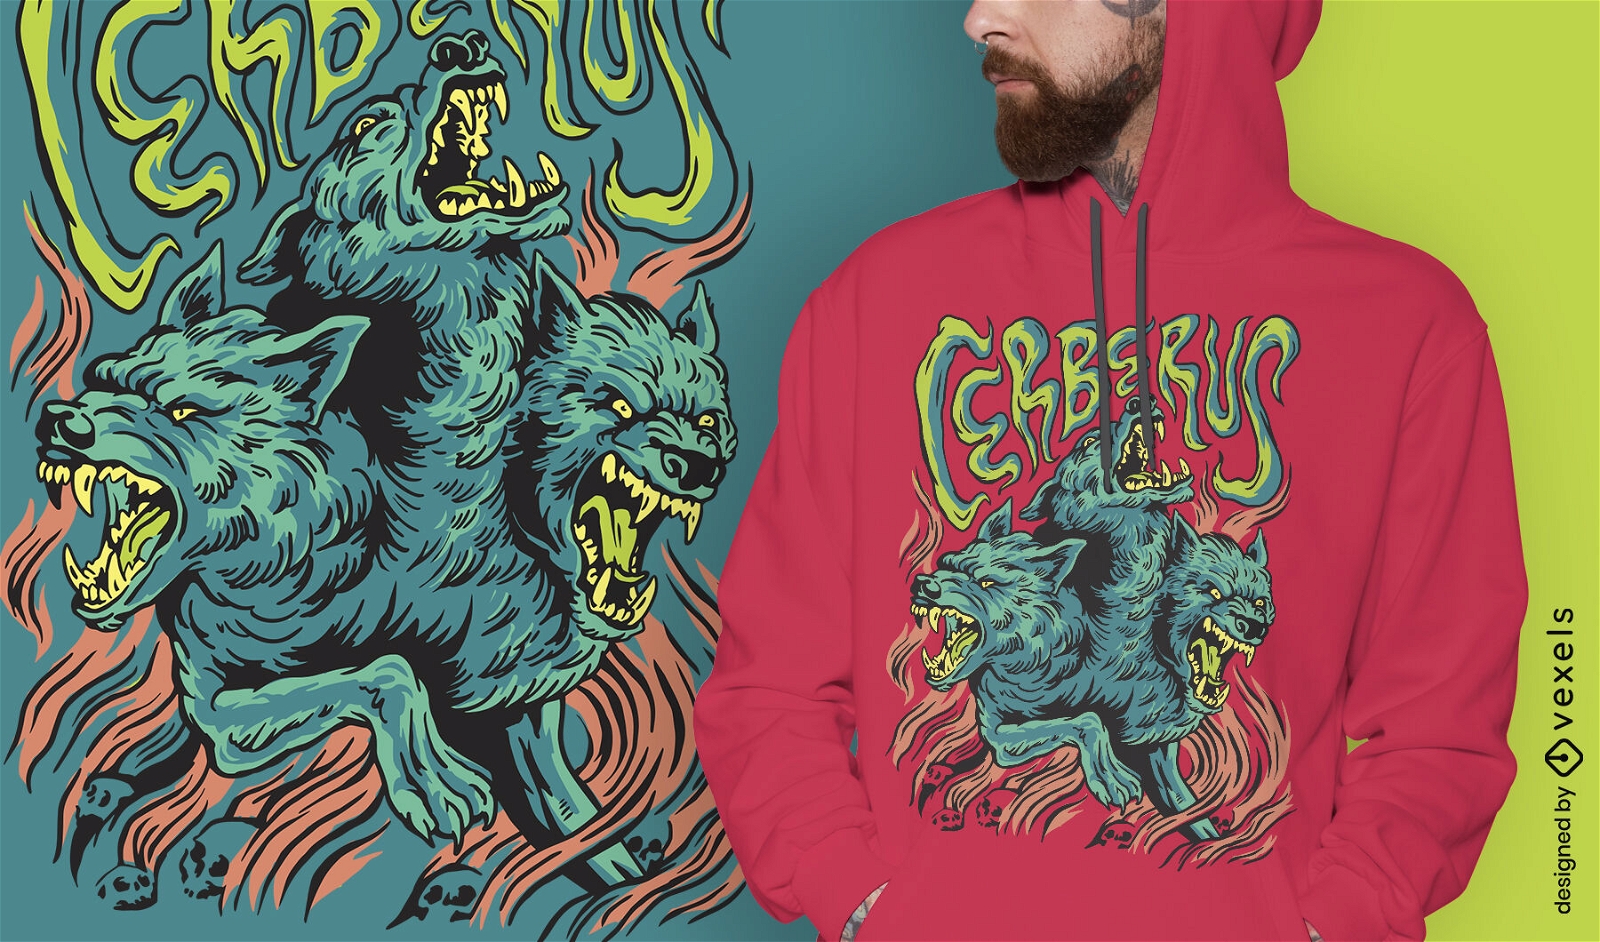 Cerberus Monster mythisches Griechenland T-Shirt Design